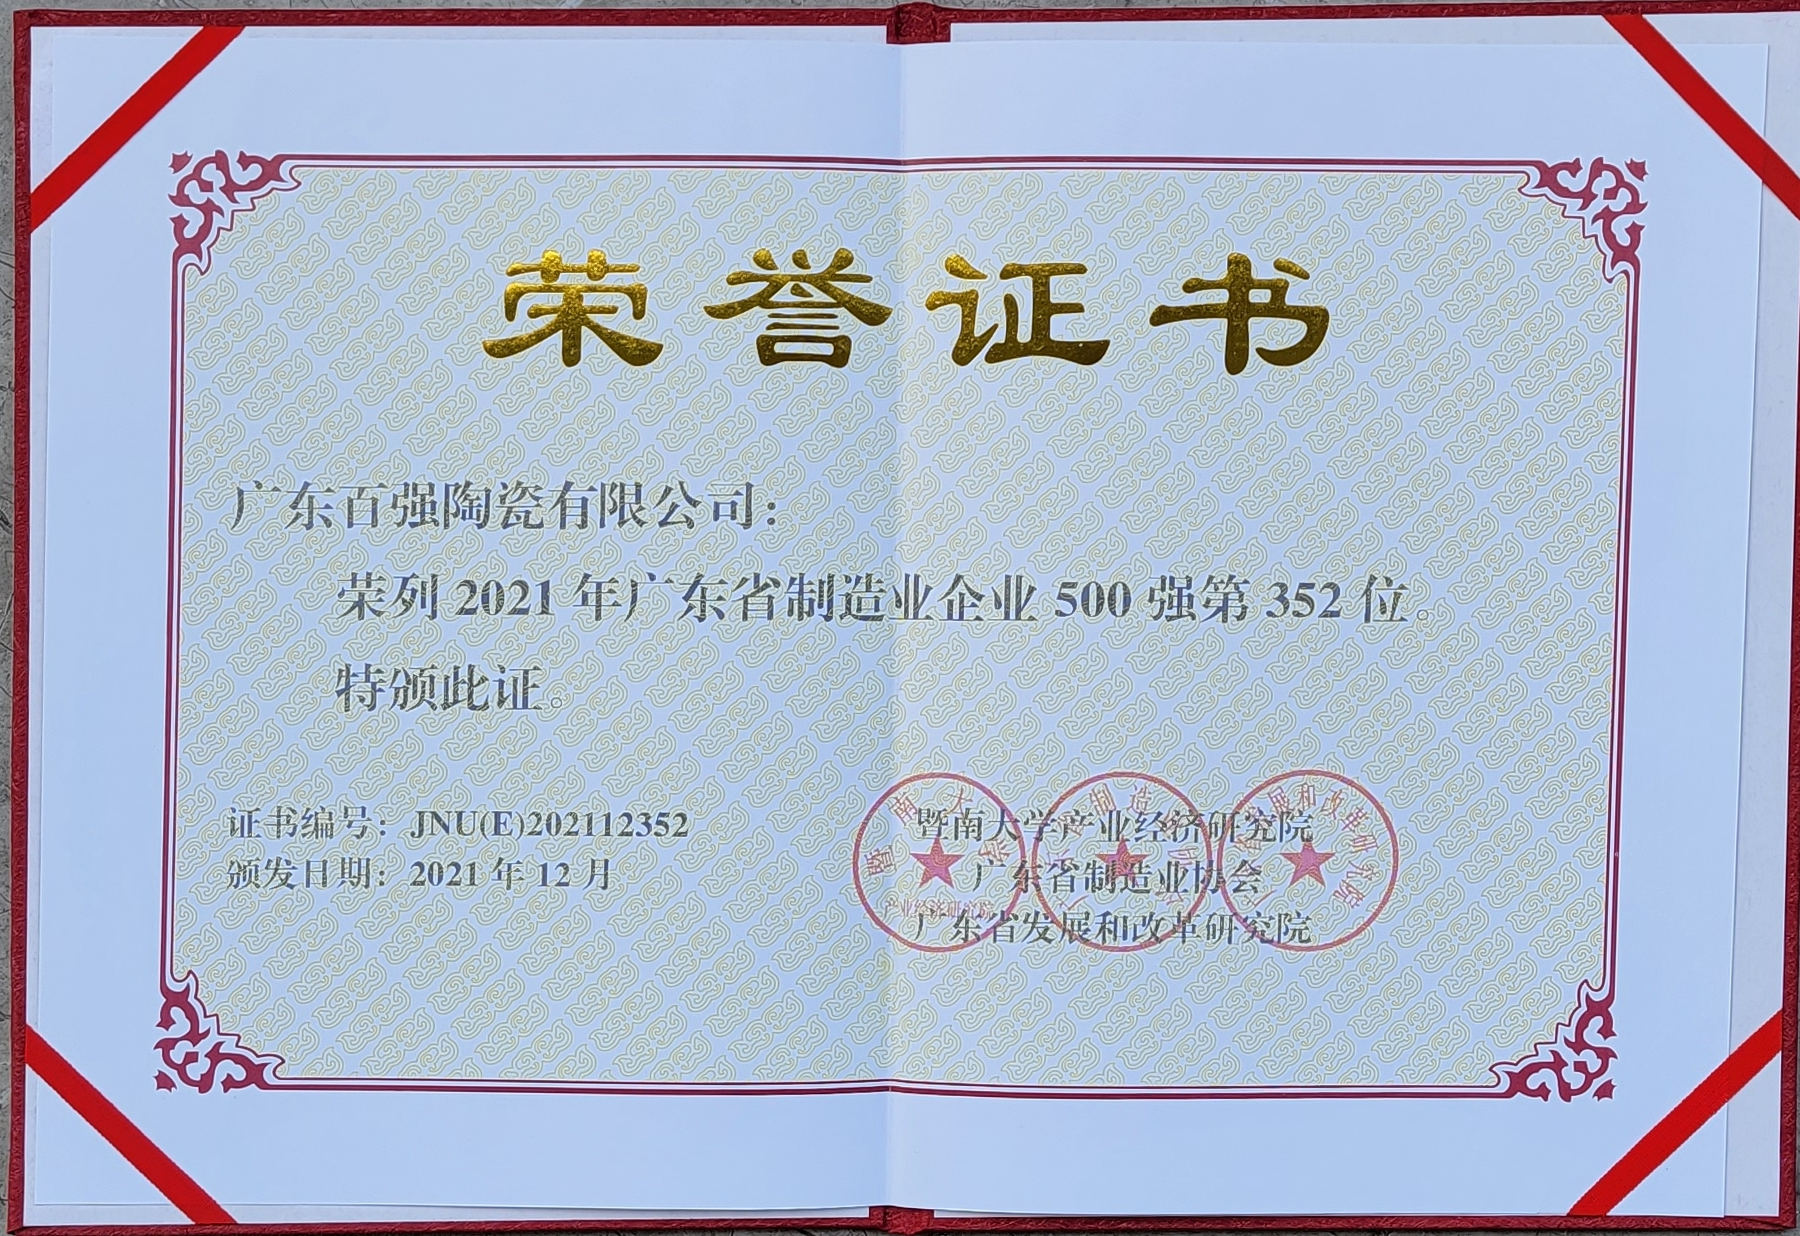 【重磅】欧莱克陶瓷生产基地——百强企业连续六年蝉联“广东省制造业500强企业”。